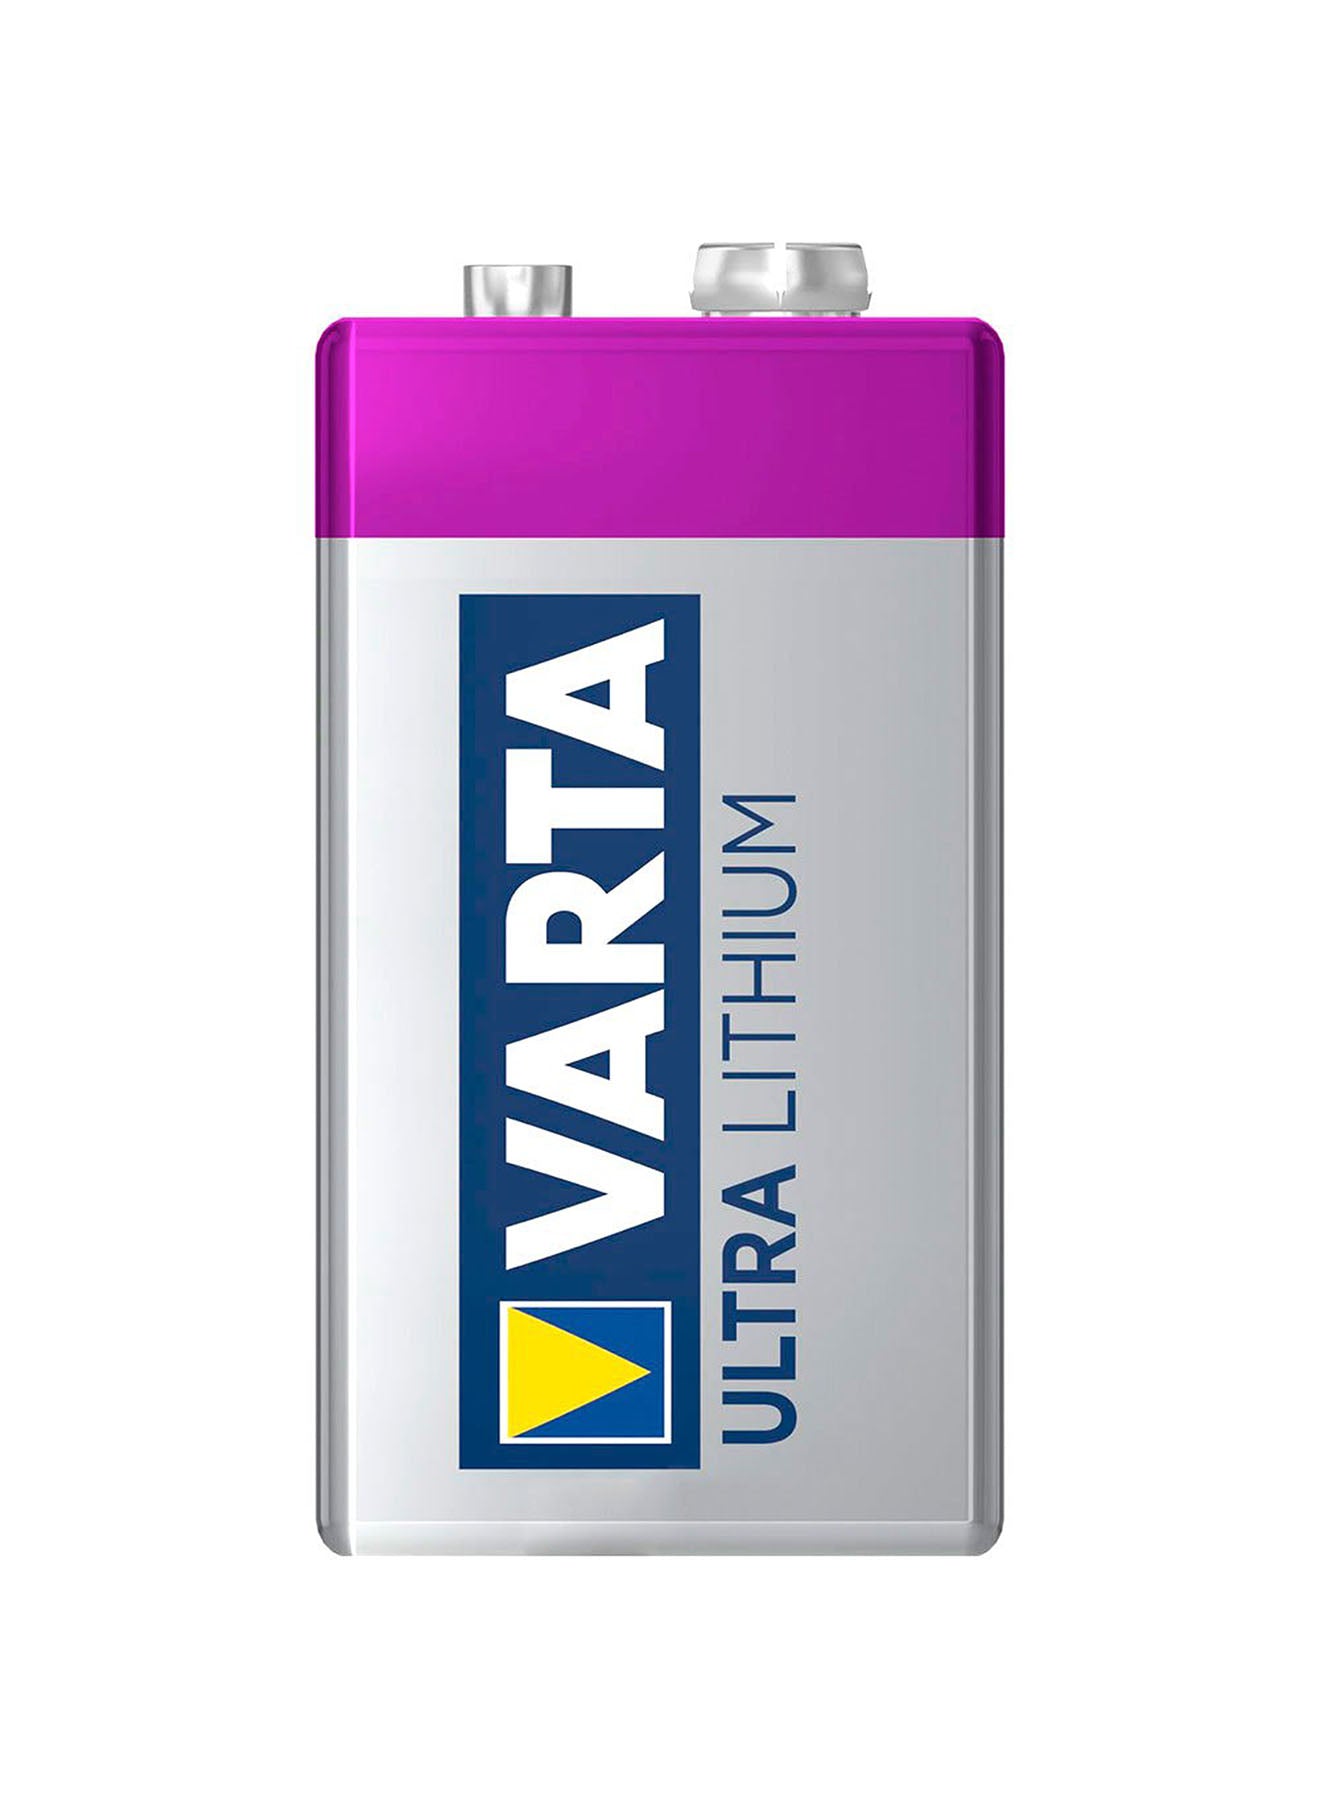 Varta Ultra Lithium 9VBlock 6 LR Batteries